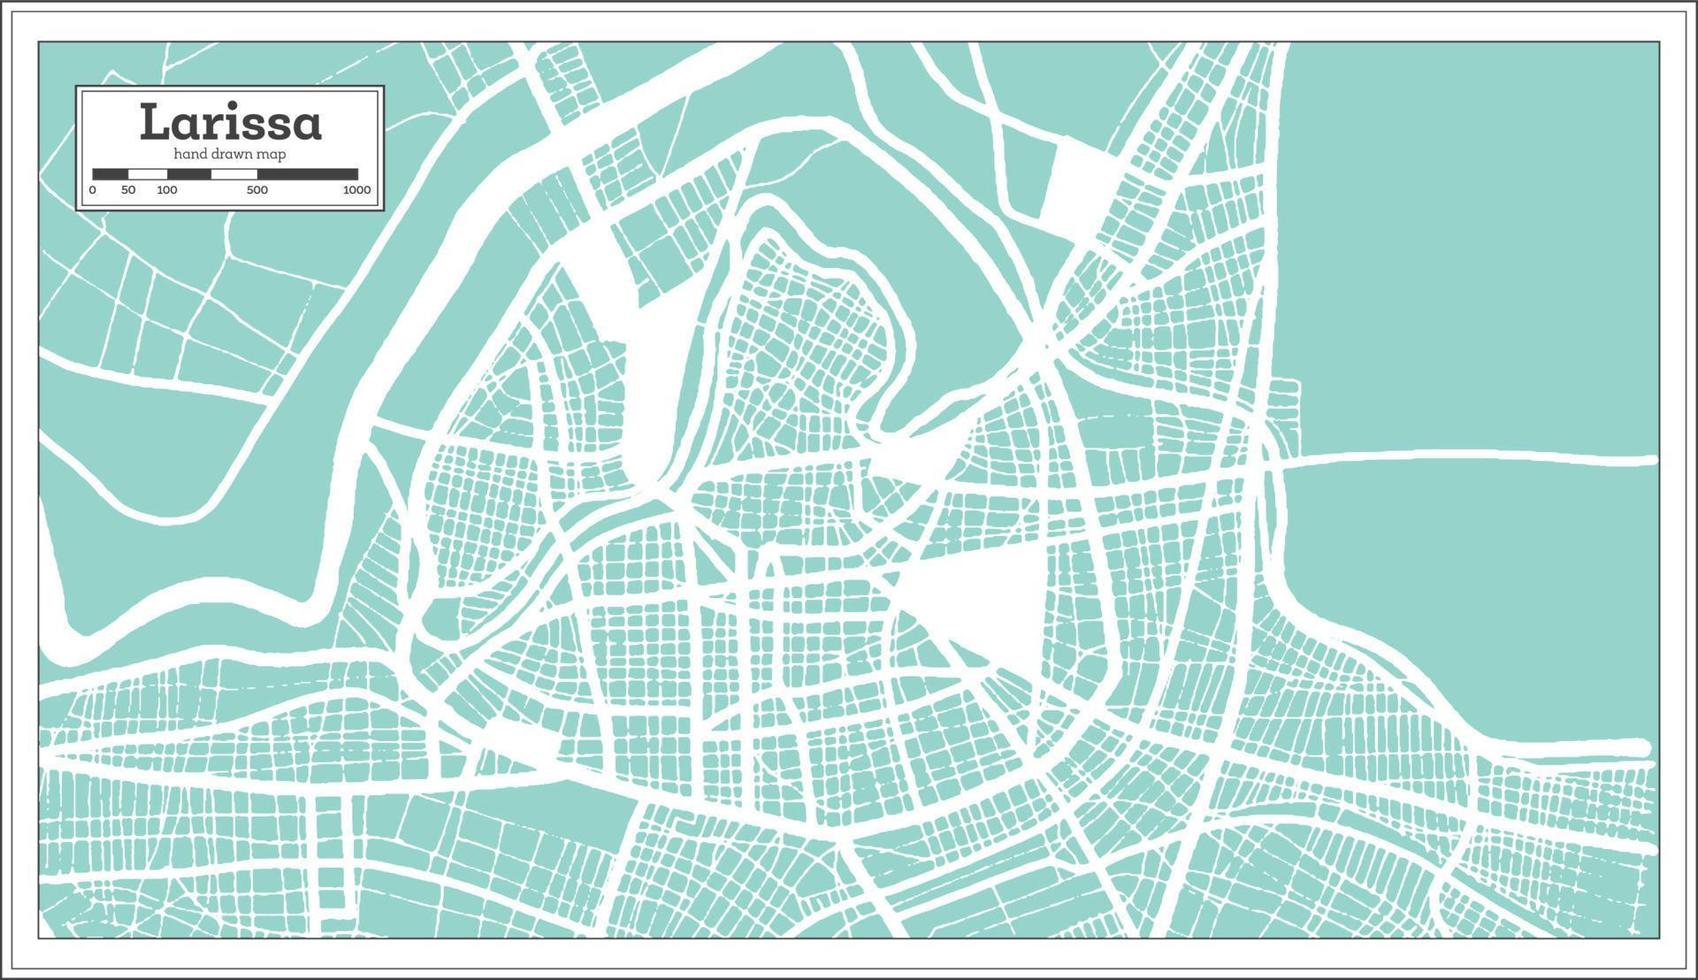 plan de la ville de larissa grèce dans un style rétro. carte muette. vecteur